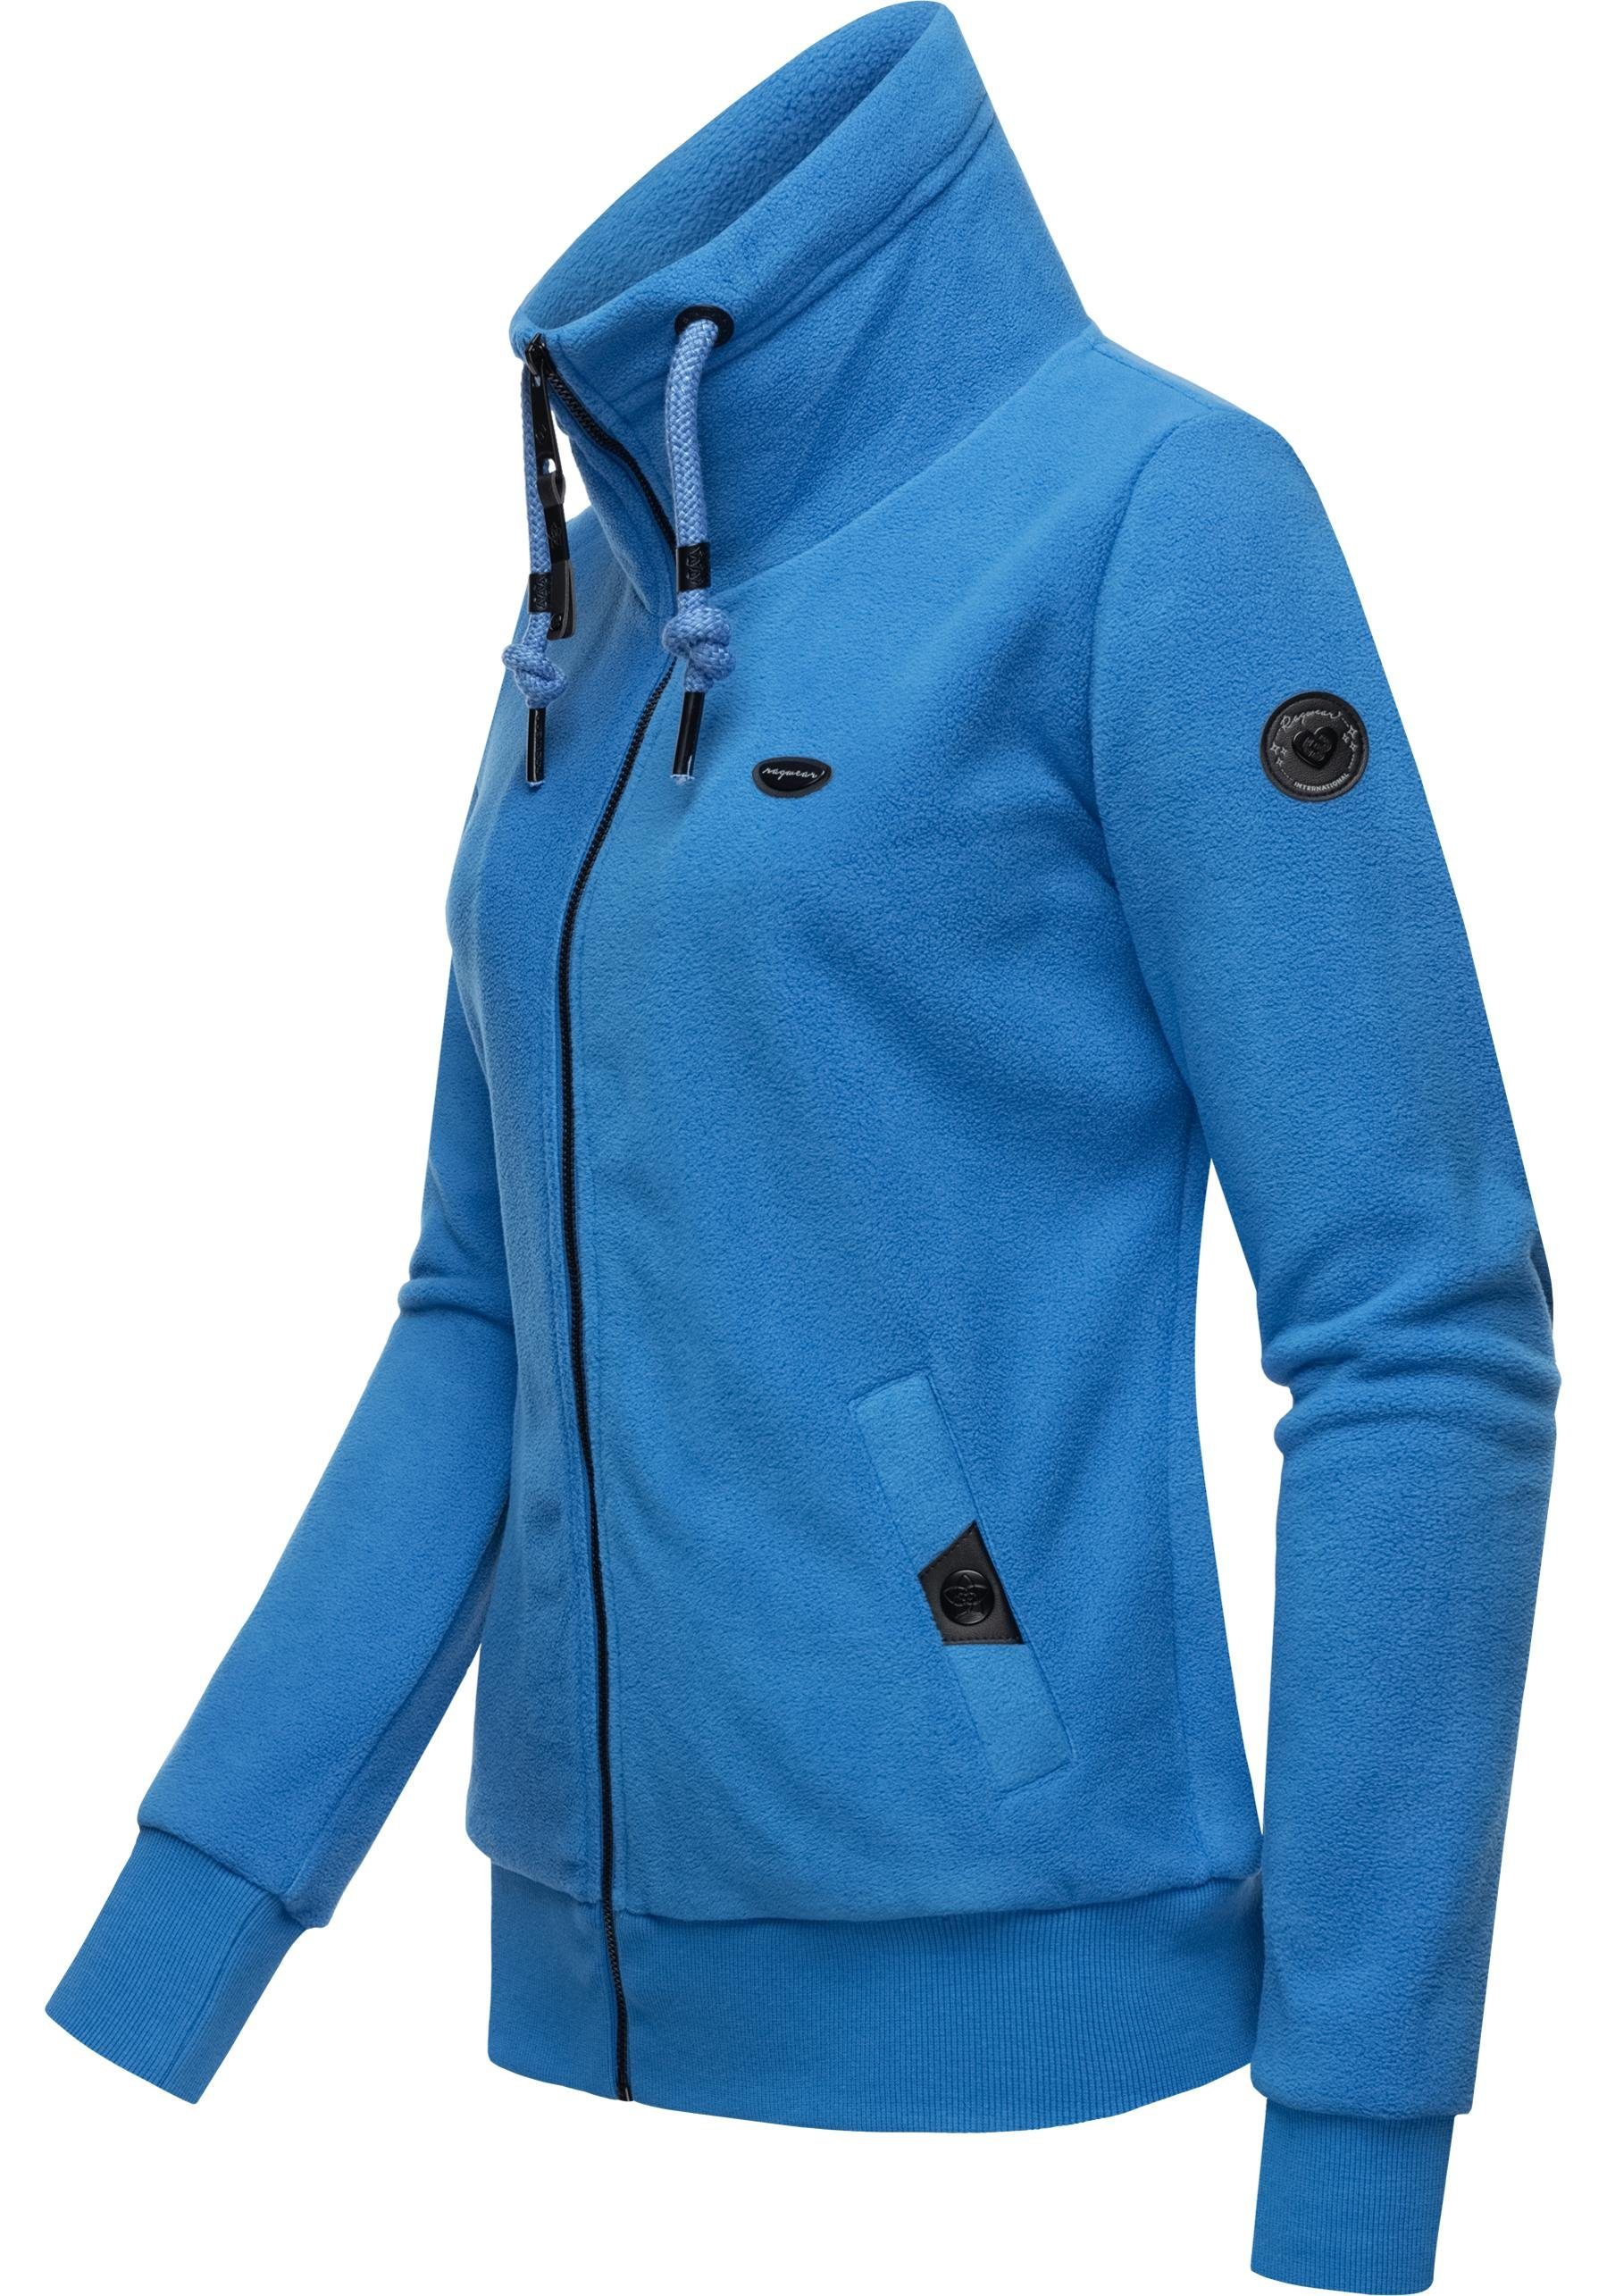 Solid weicher Zip blau Fleece mit Kordeln Zip-Sweater Rylie Sweatjacke Ragwear Fleece